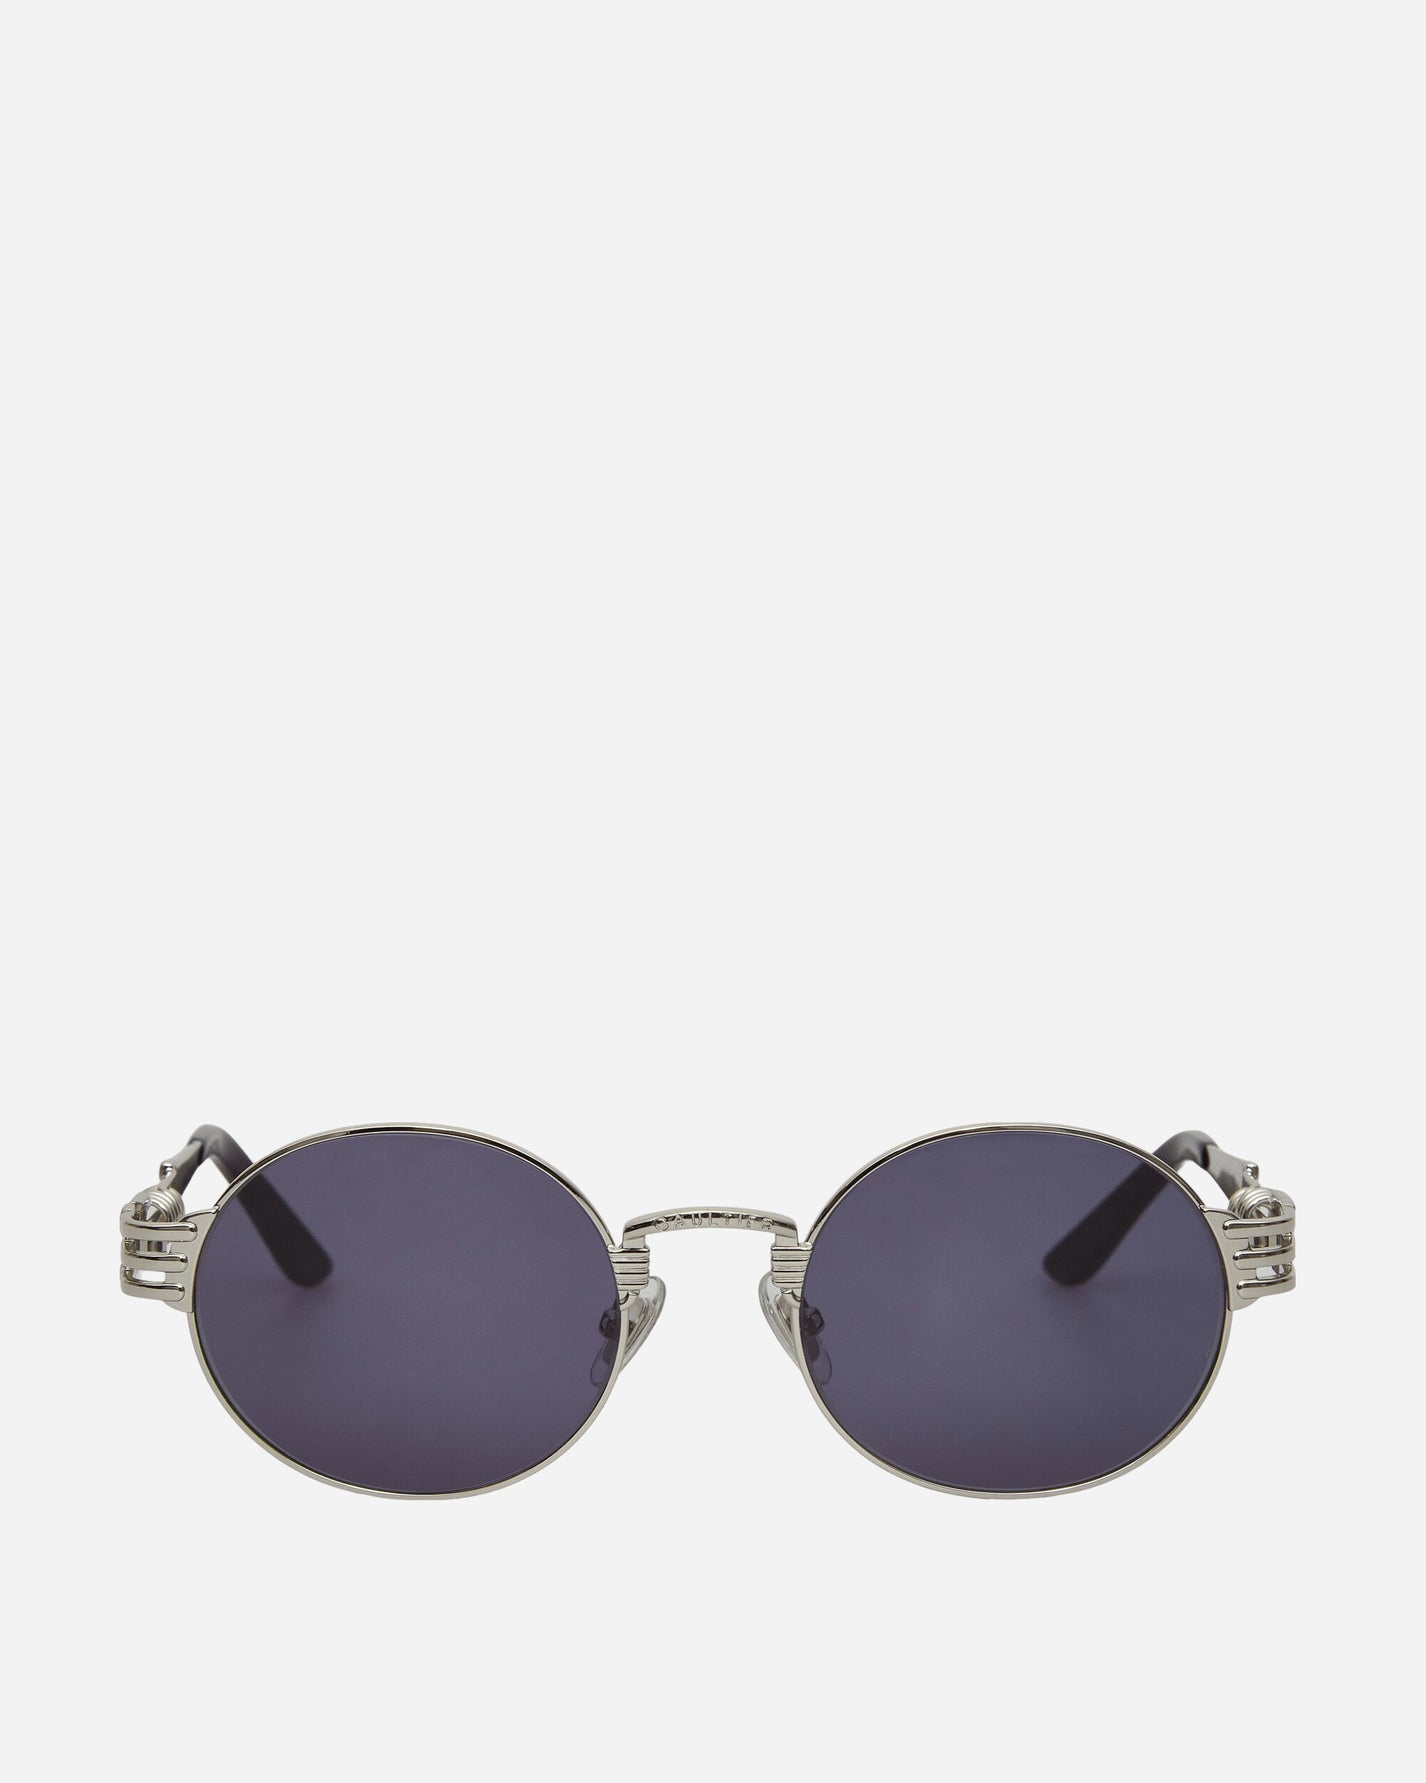 Jean Paul Gaultier Wmns Lunette Double Ressort Silver Eyewear Sunglasses LU004-X024 91